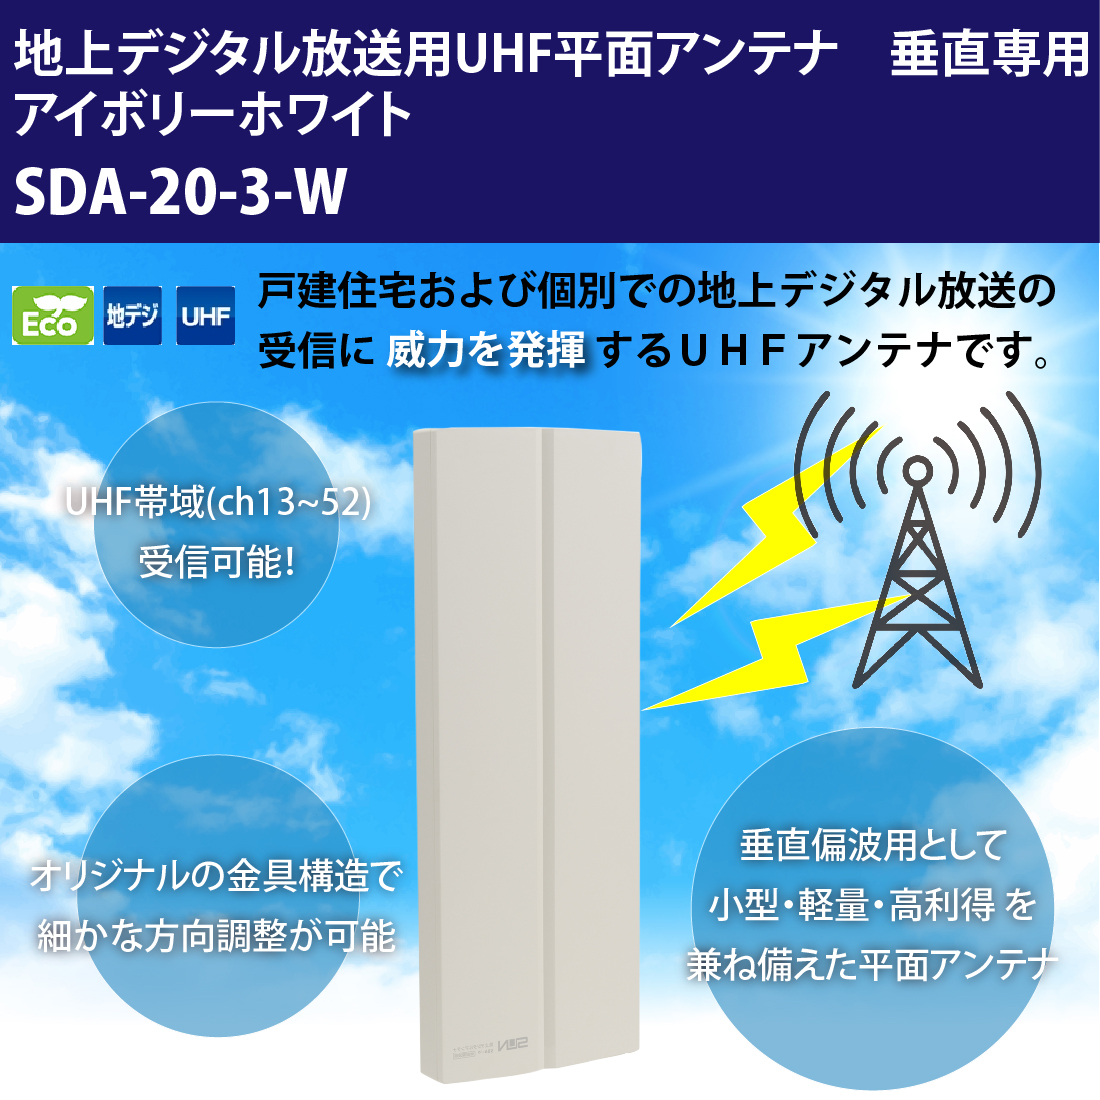 サン電子 地デジアンテナ SDA-20-3-W UHF平面アンテナ 20素子相当 垂直